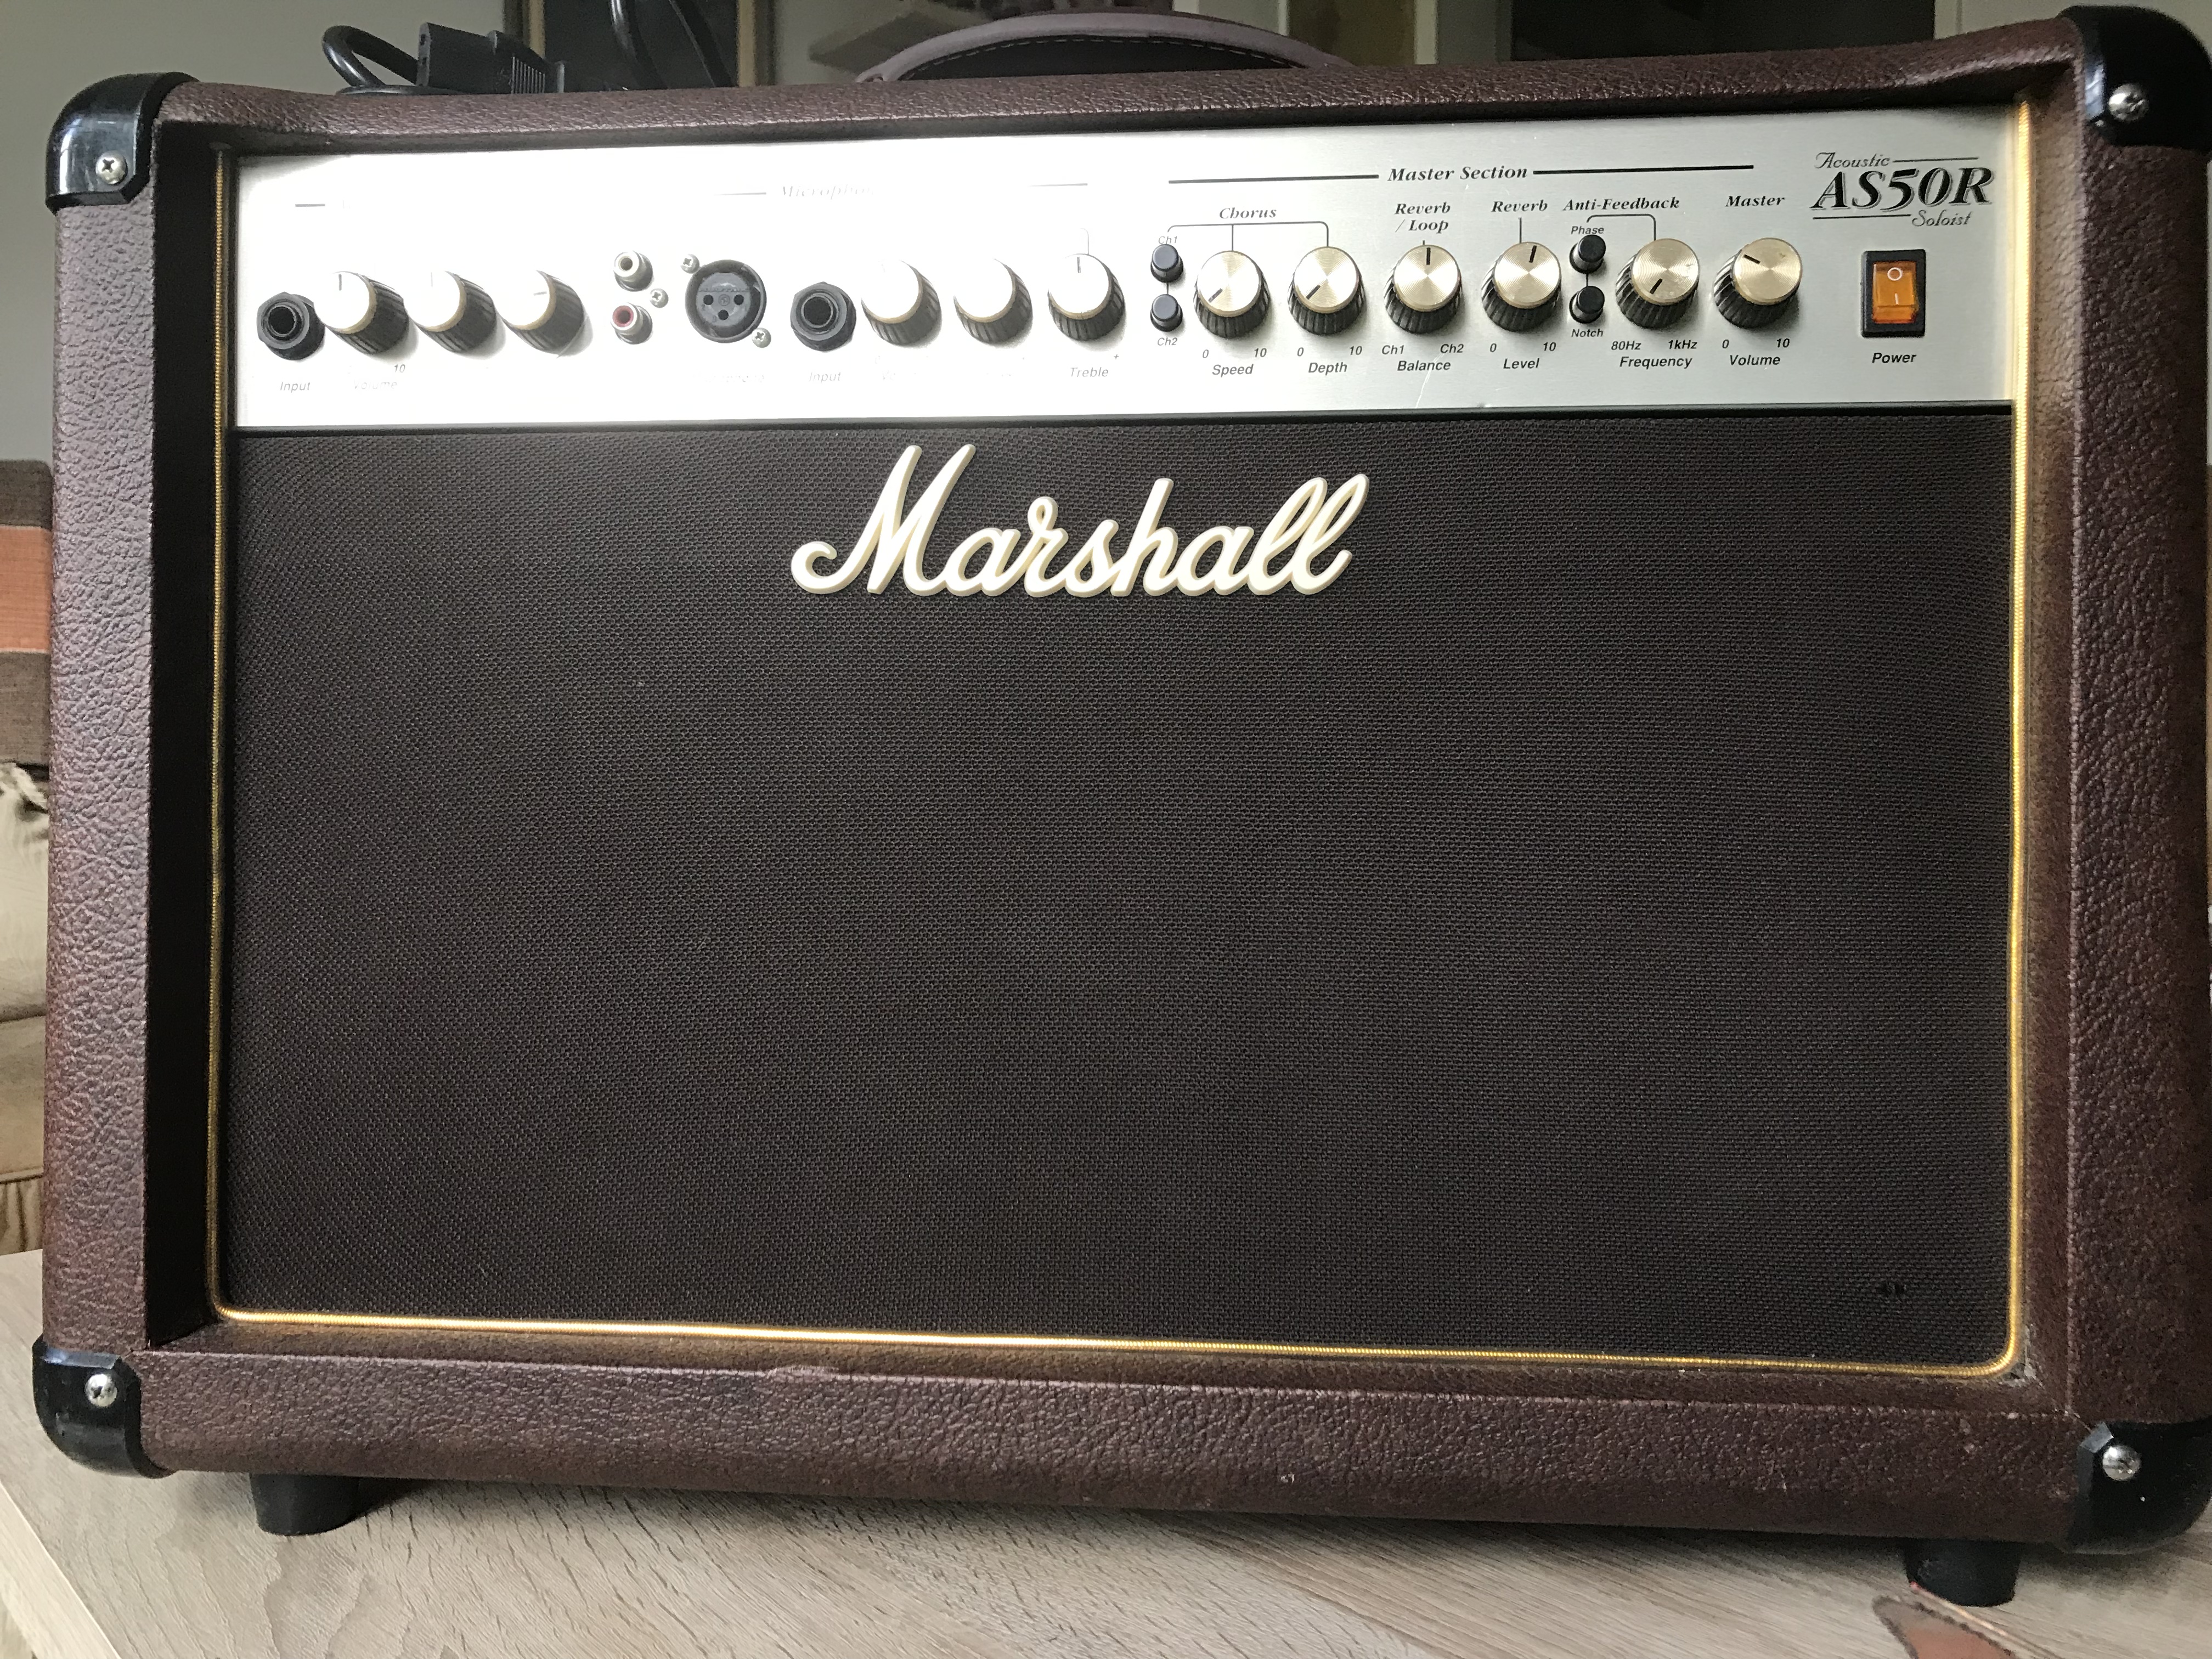 AS50R - Marshall AS50R - Audiofanzine